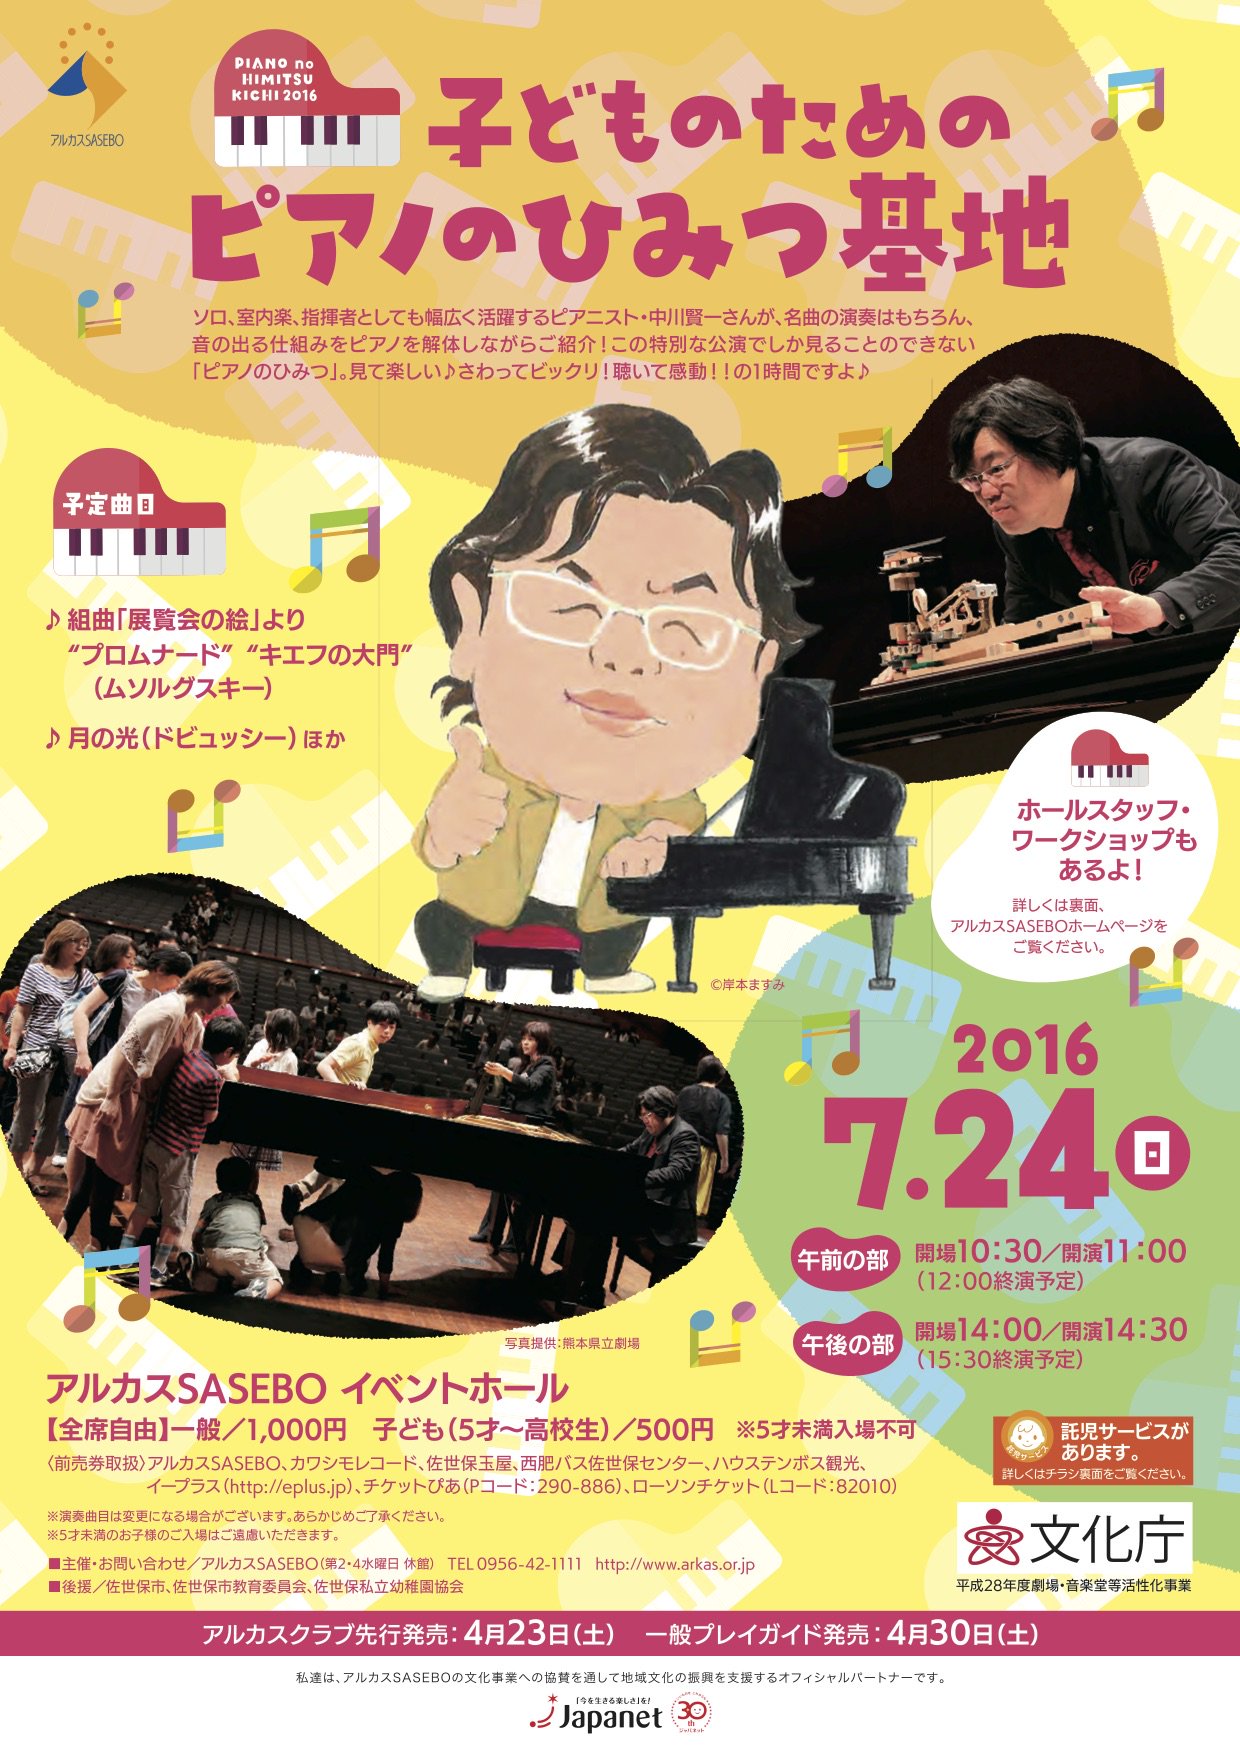 Asami Tanimura ピアニスト 中川賢一さんの子ども向けのコンサートに行ってきました ピアノを解体してピアノの仕組みを楽しく教えながら演奏 飽きない一時間 ドビュッシー 月の光 心地よかった 来年2月はそんな中川賢一さんとコラボさせていただき